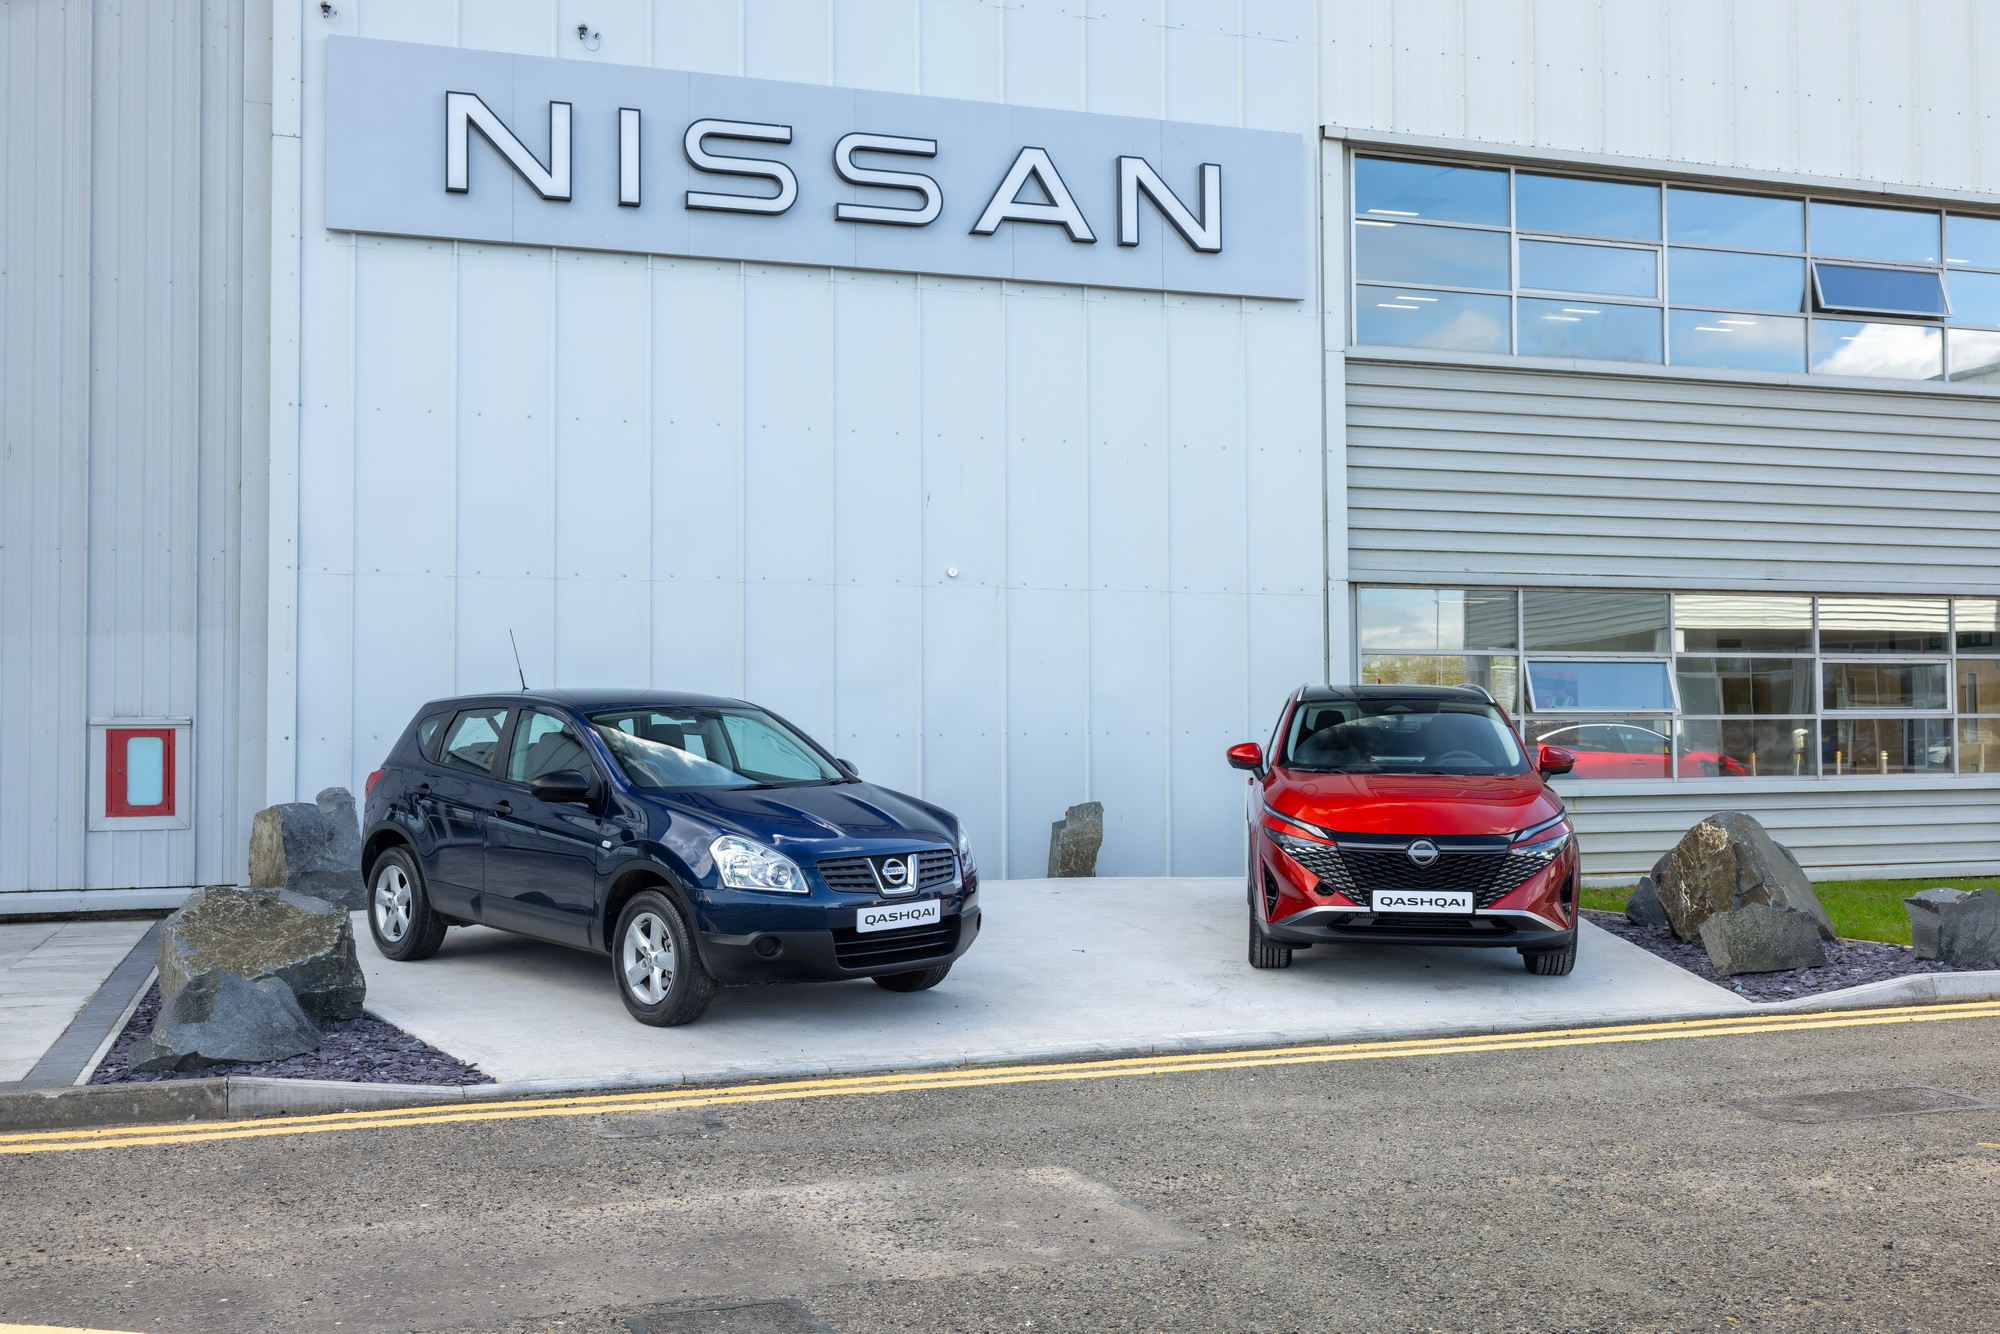 Nissan Motor Manufacturing UK